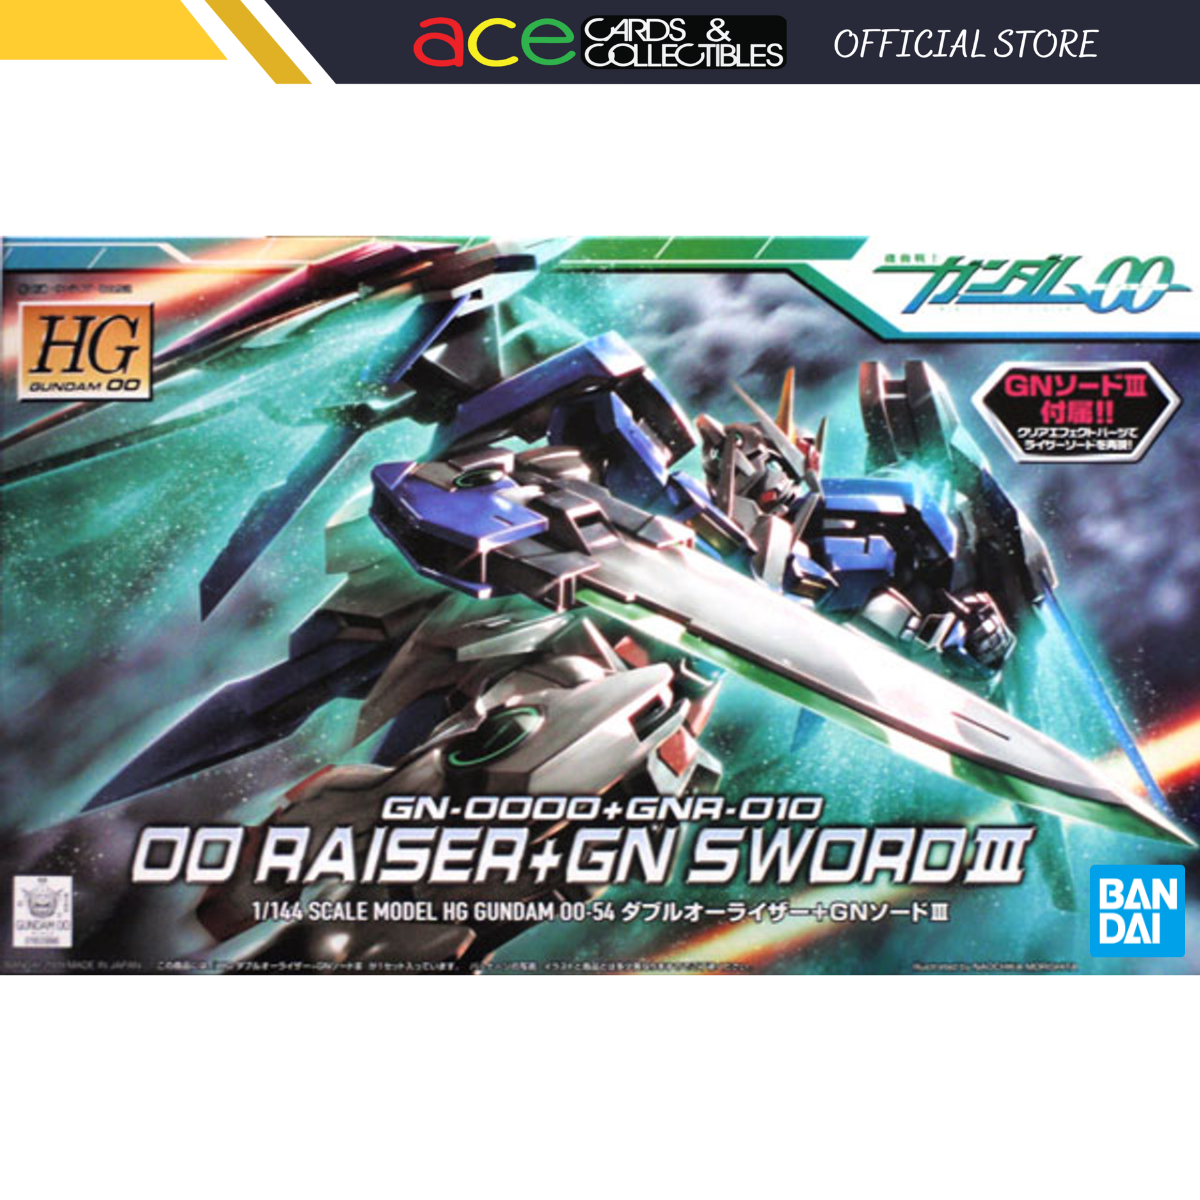 Gunpla HG1/144 OO Raiser + GN Sword III-Bandai-Ace Cards &amp; Collectibles